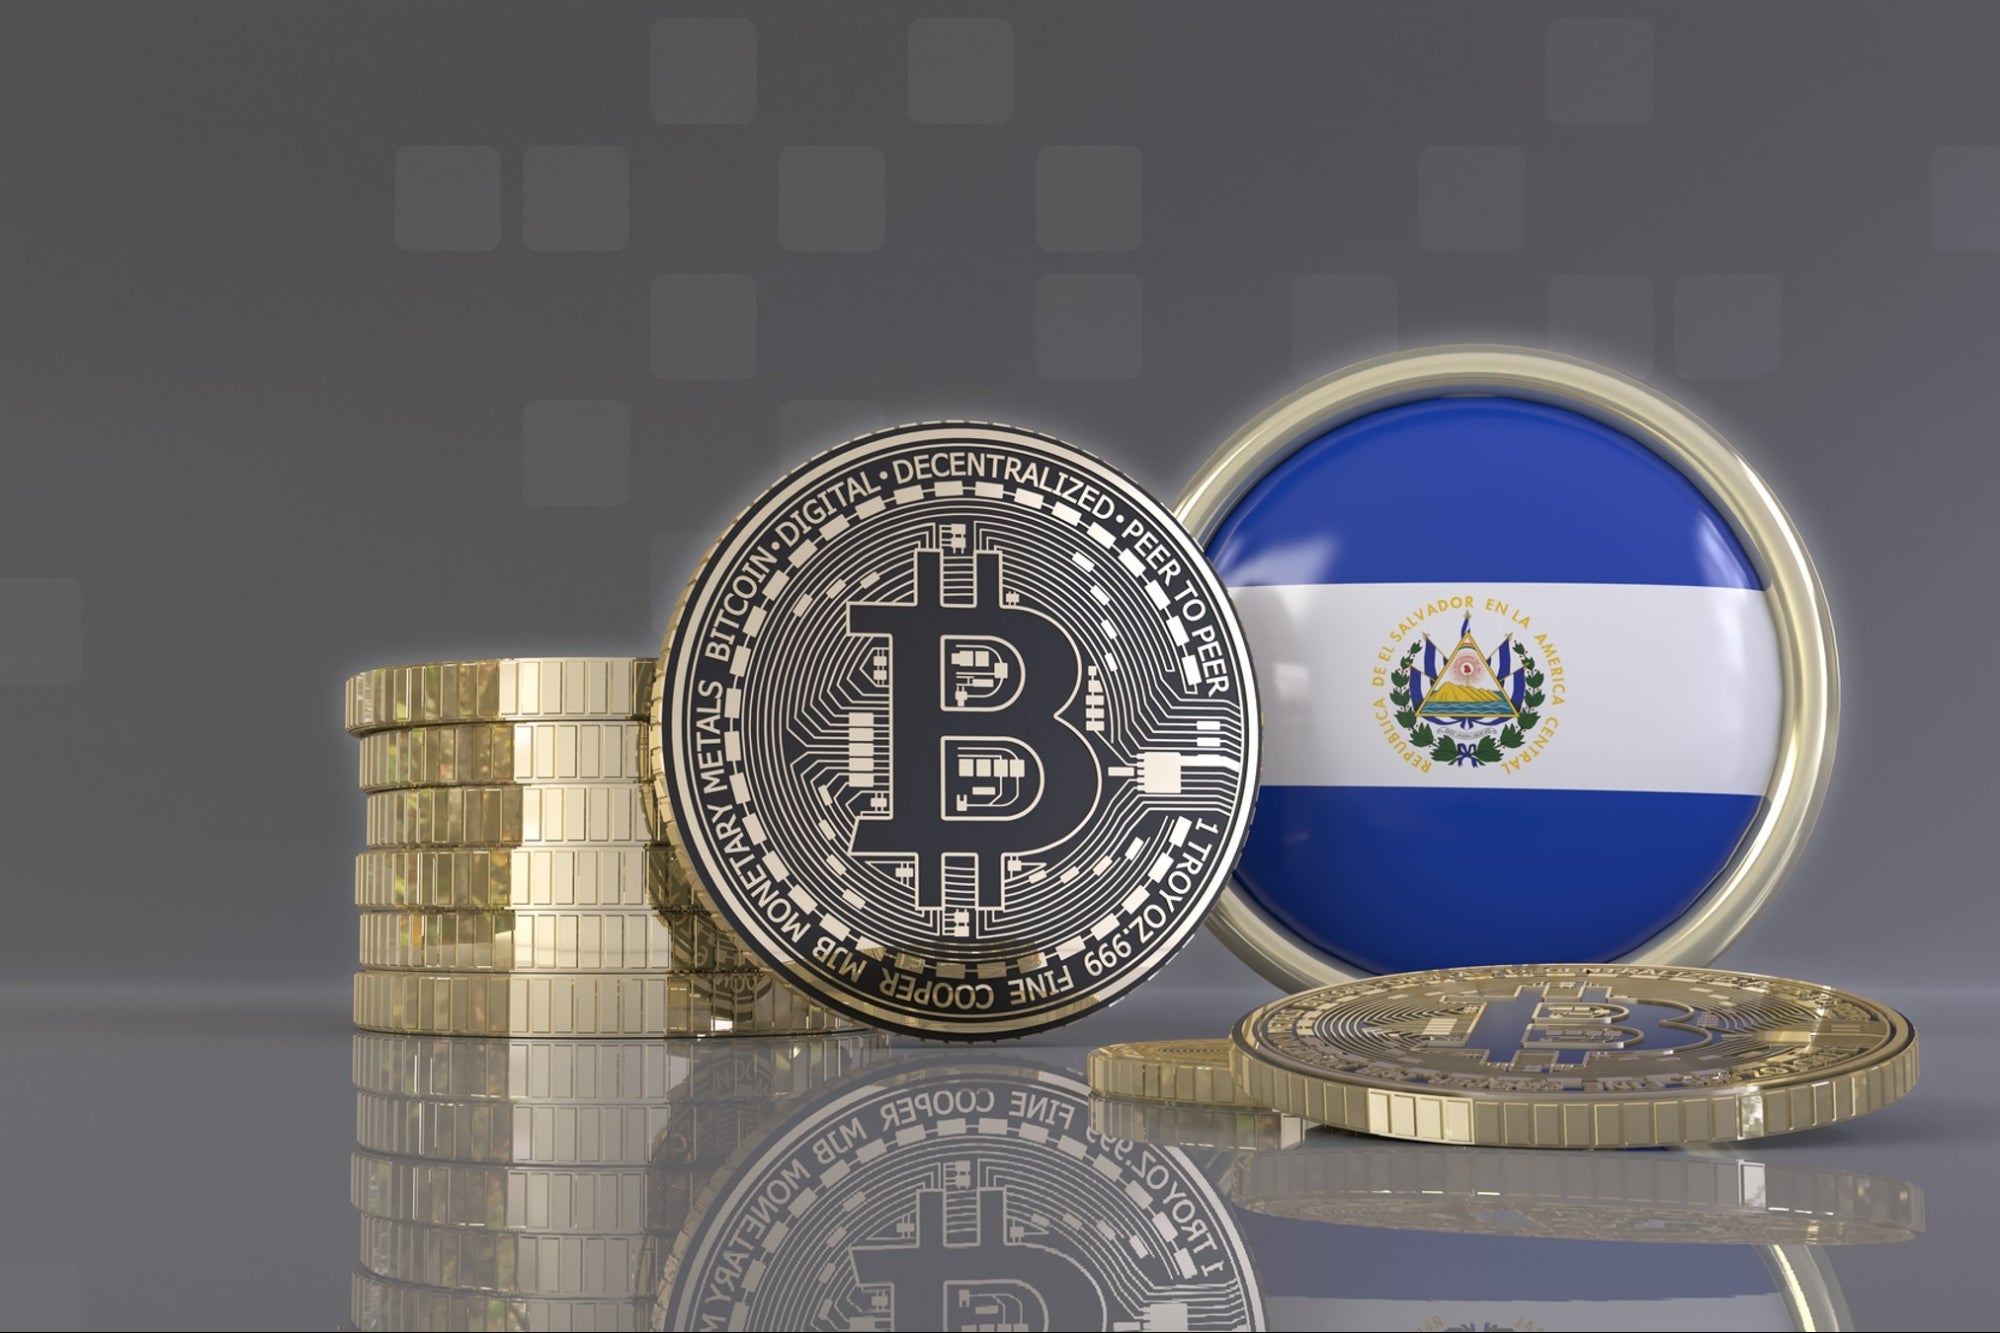 Bitcoin moneta legale a El Salvador come il dollaro: primo Paese al mondo